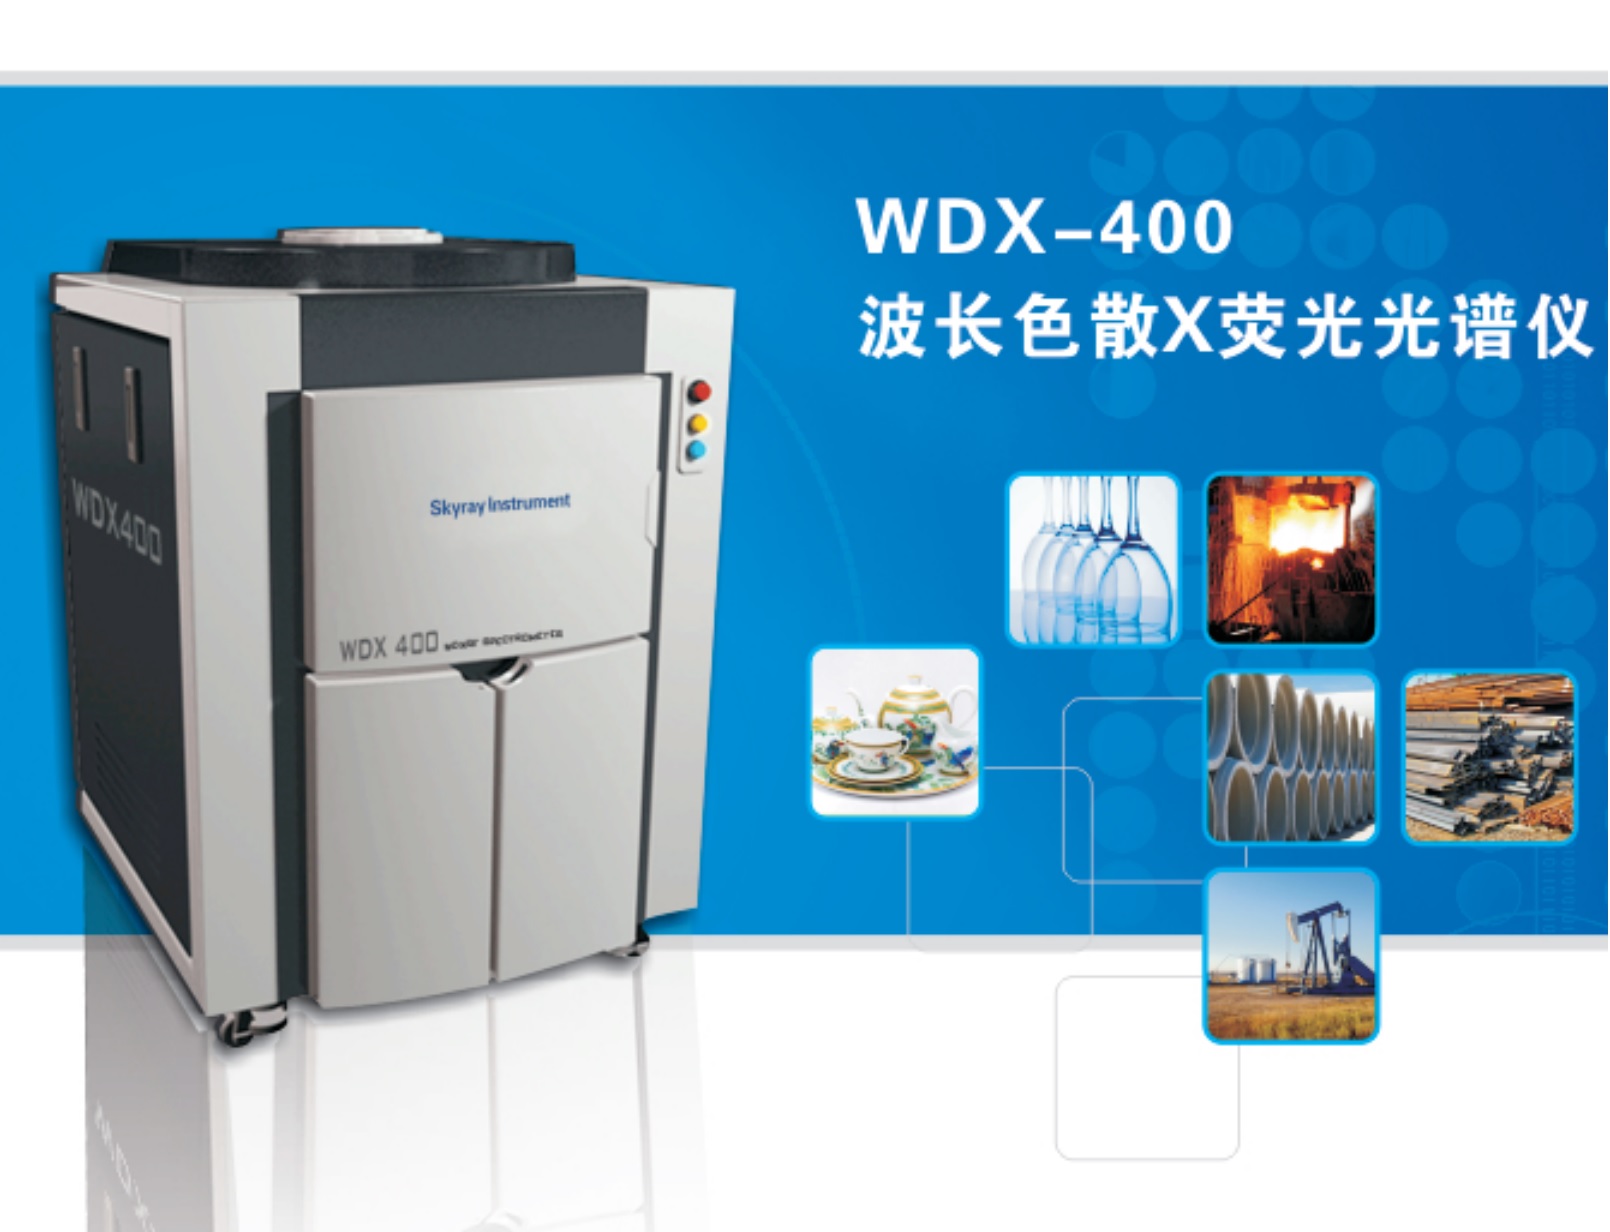 江苏天瑞仪器股份有限公司-天瑞仪器WDX400